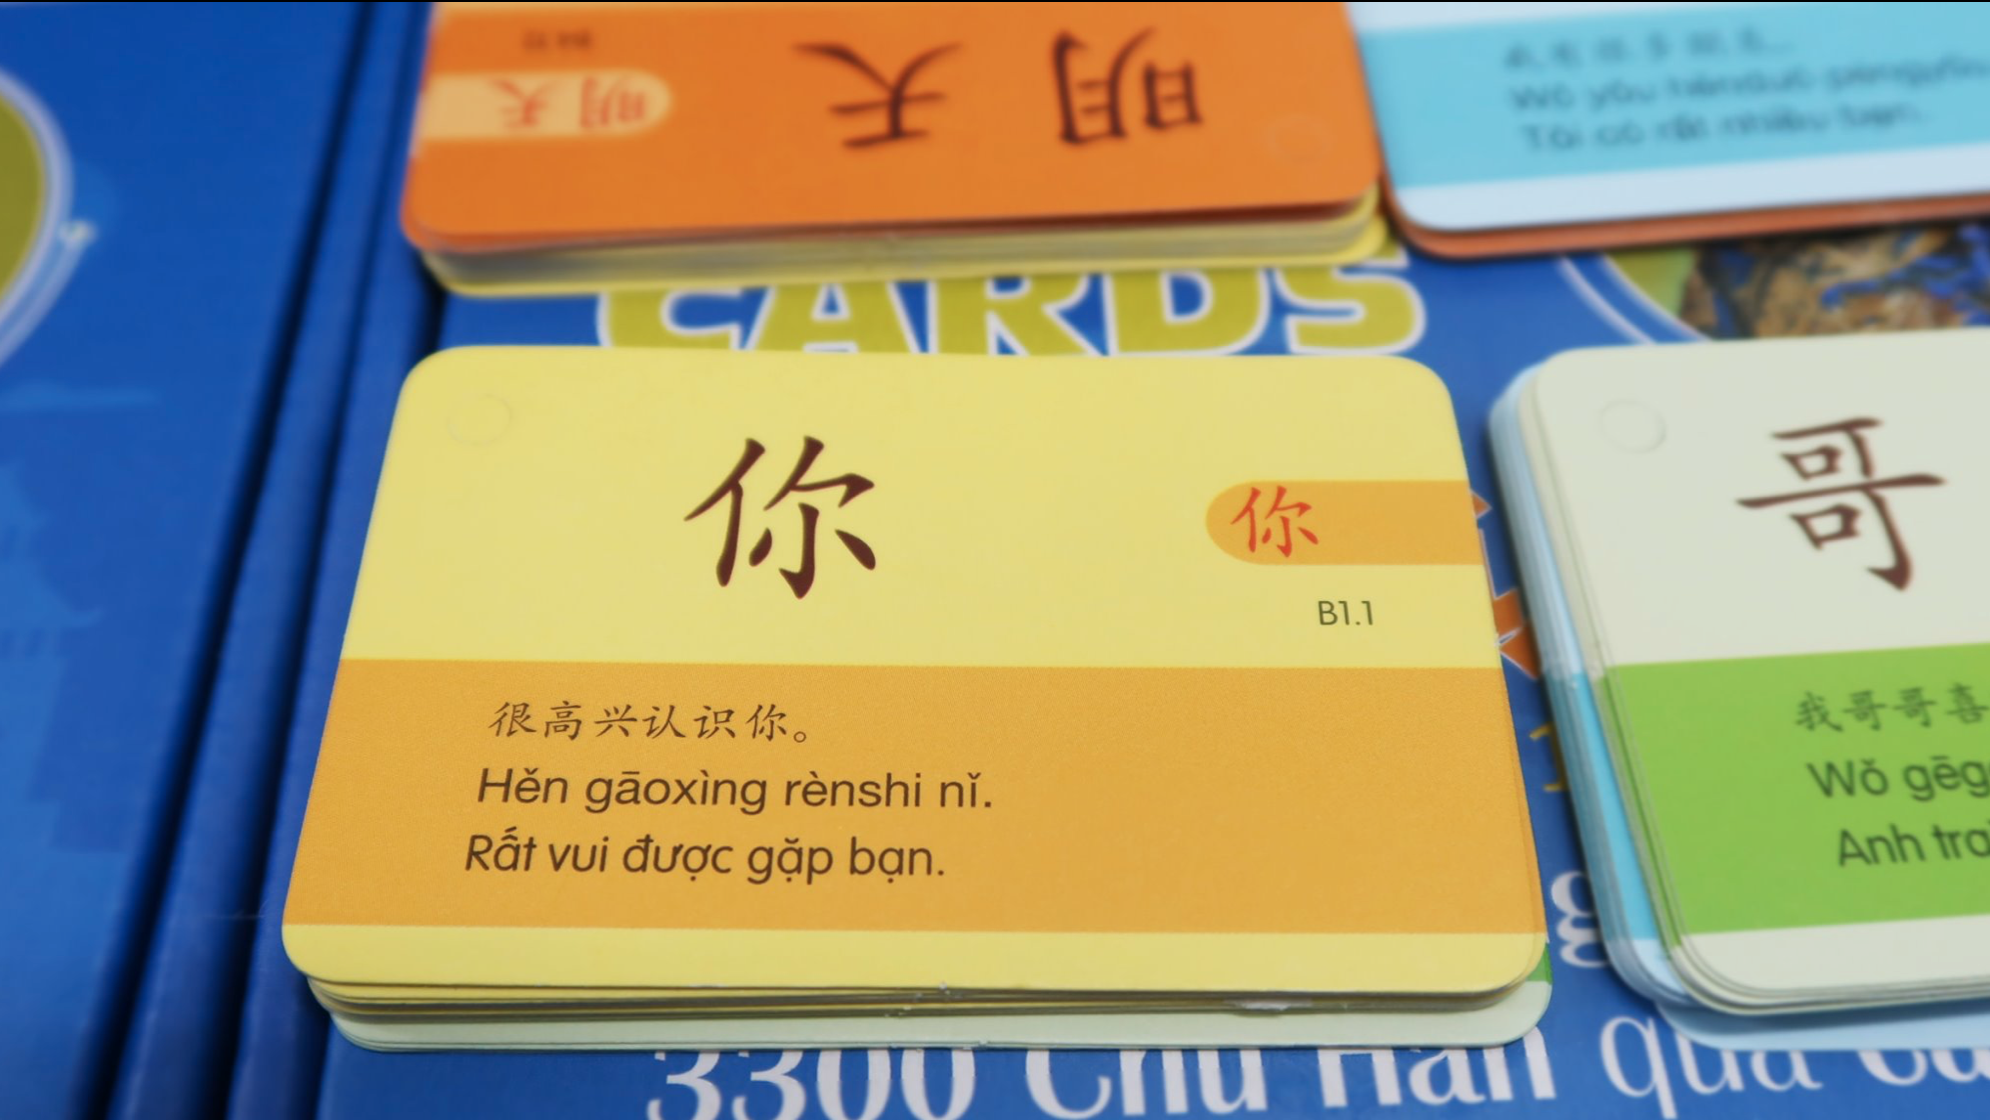 Chinh phục từ vựng tiếng Anh một cách hiệu quả với bộ flashcard độc đáo và hấp dẫn. Hãy cùng chúng tôi khám phá hình ảnh chi tiết về flashcard và áp dụng ngay để nâng cao khả năng học ngoại ngữ của mình.